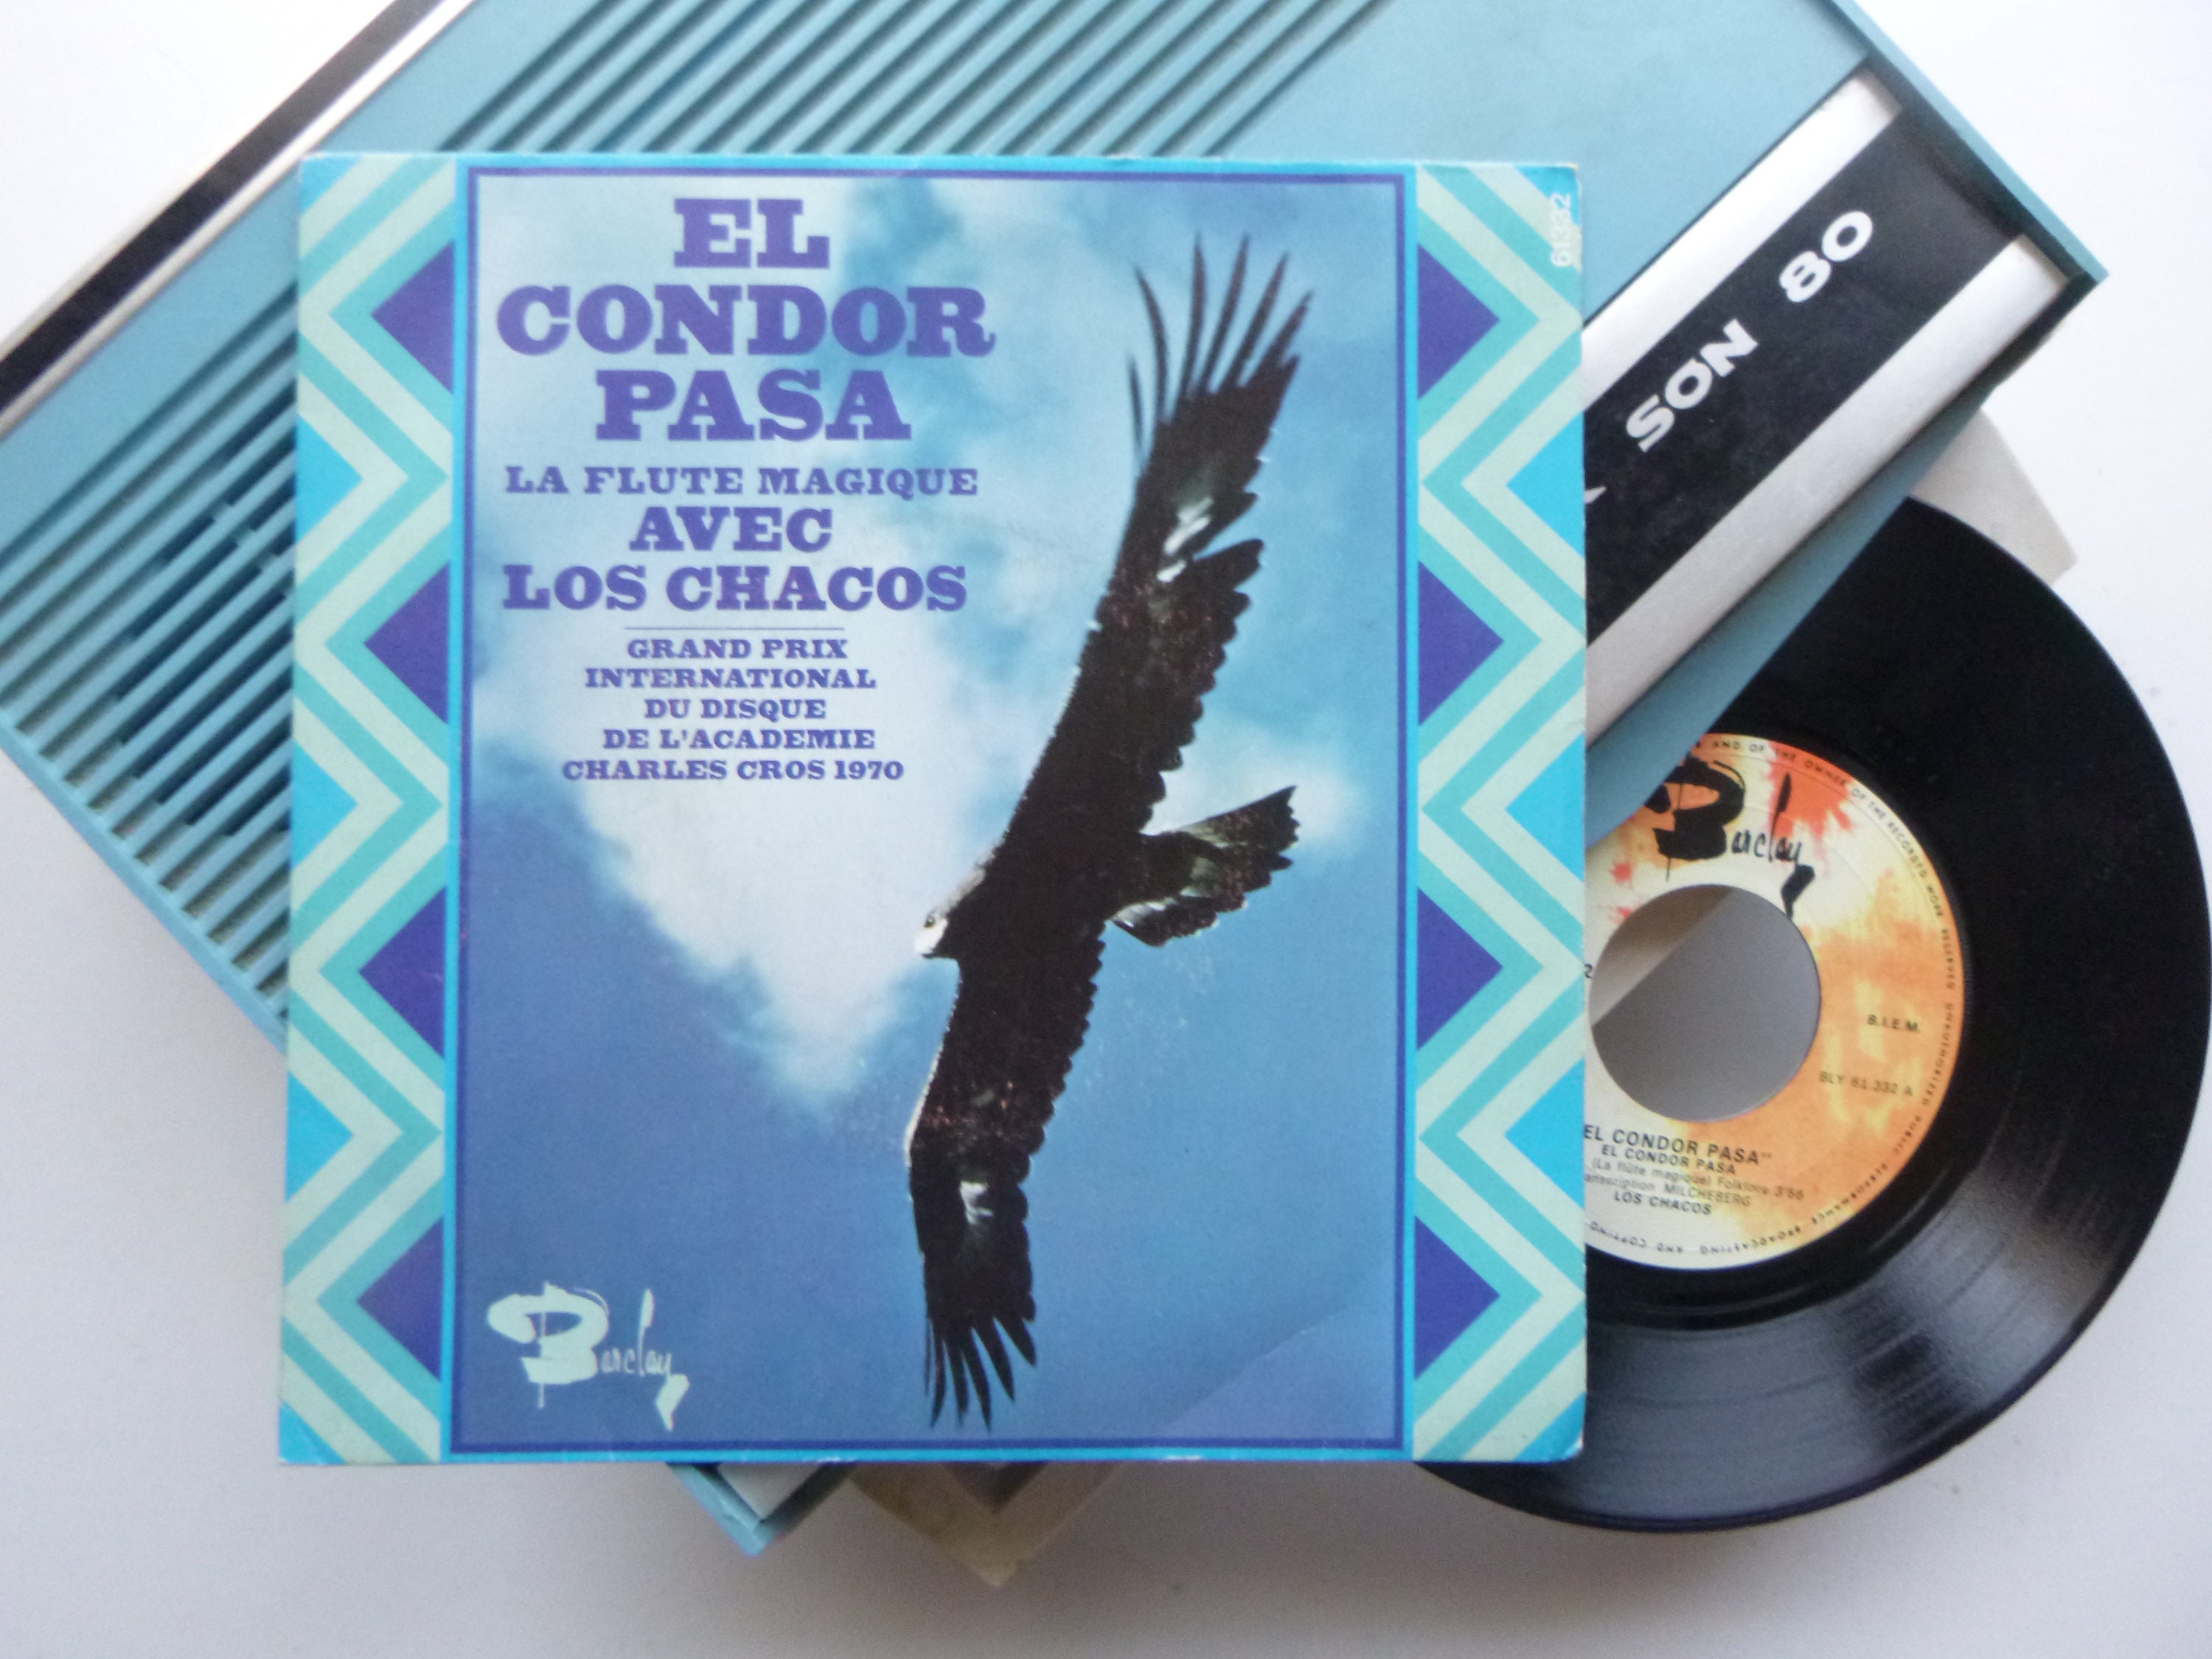 El cóndor pasa disco original 7' vinilo 45T - Etsy